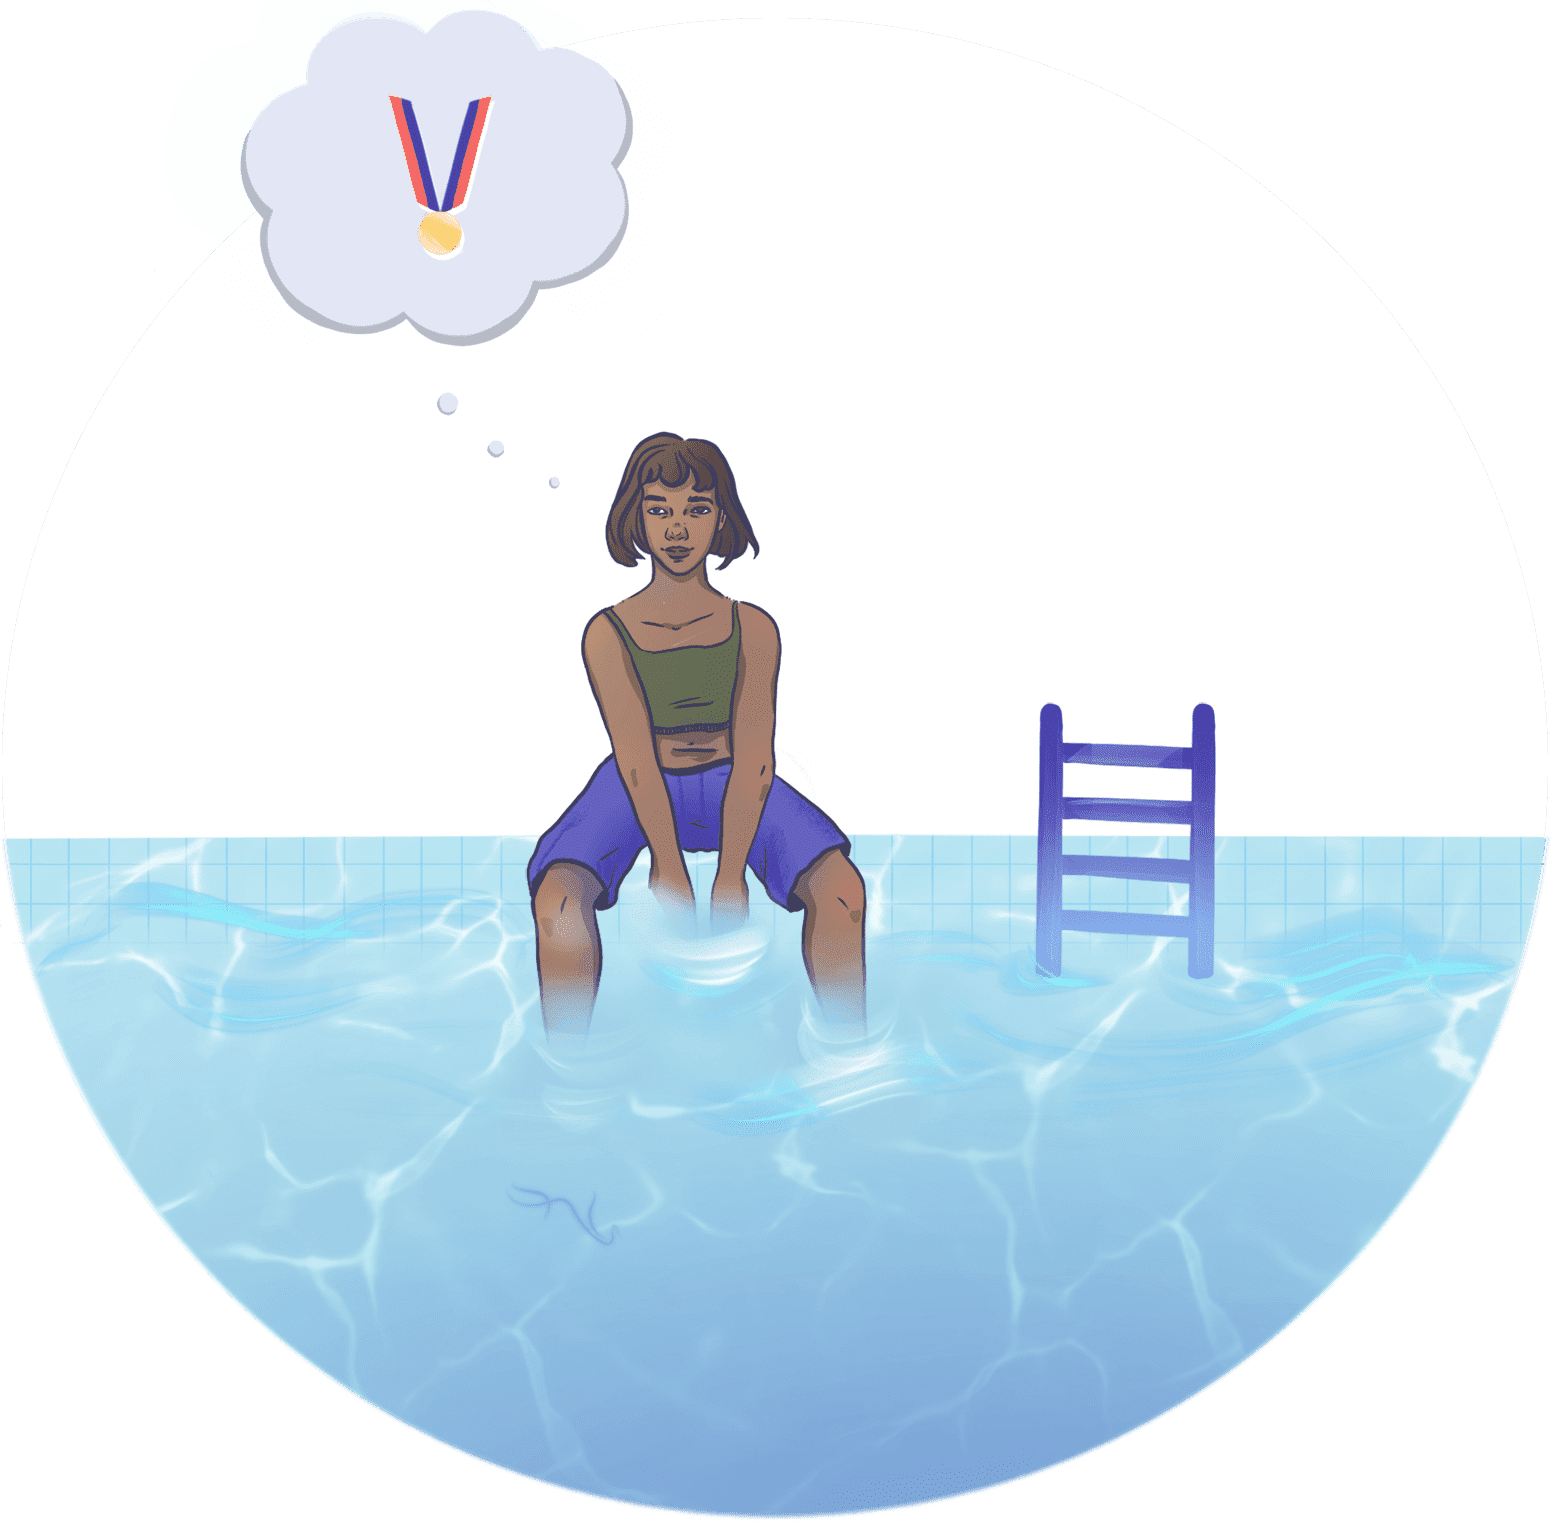 Ilustración de un nadador sentado junto a la piscina. Una burbuja de pensamiento muestra al nadador fantaseando con ganar una medalla de oro.